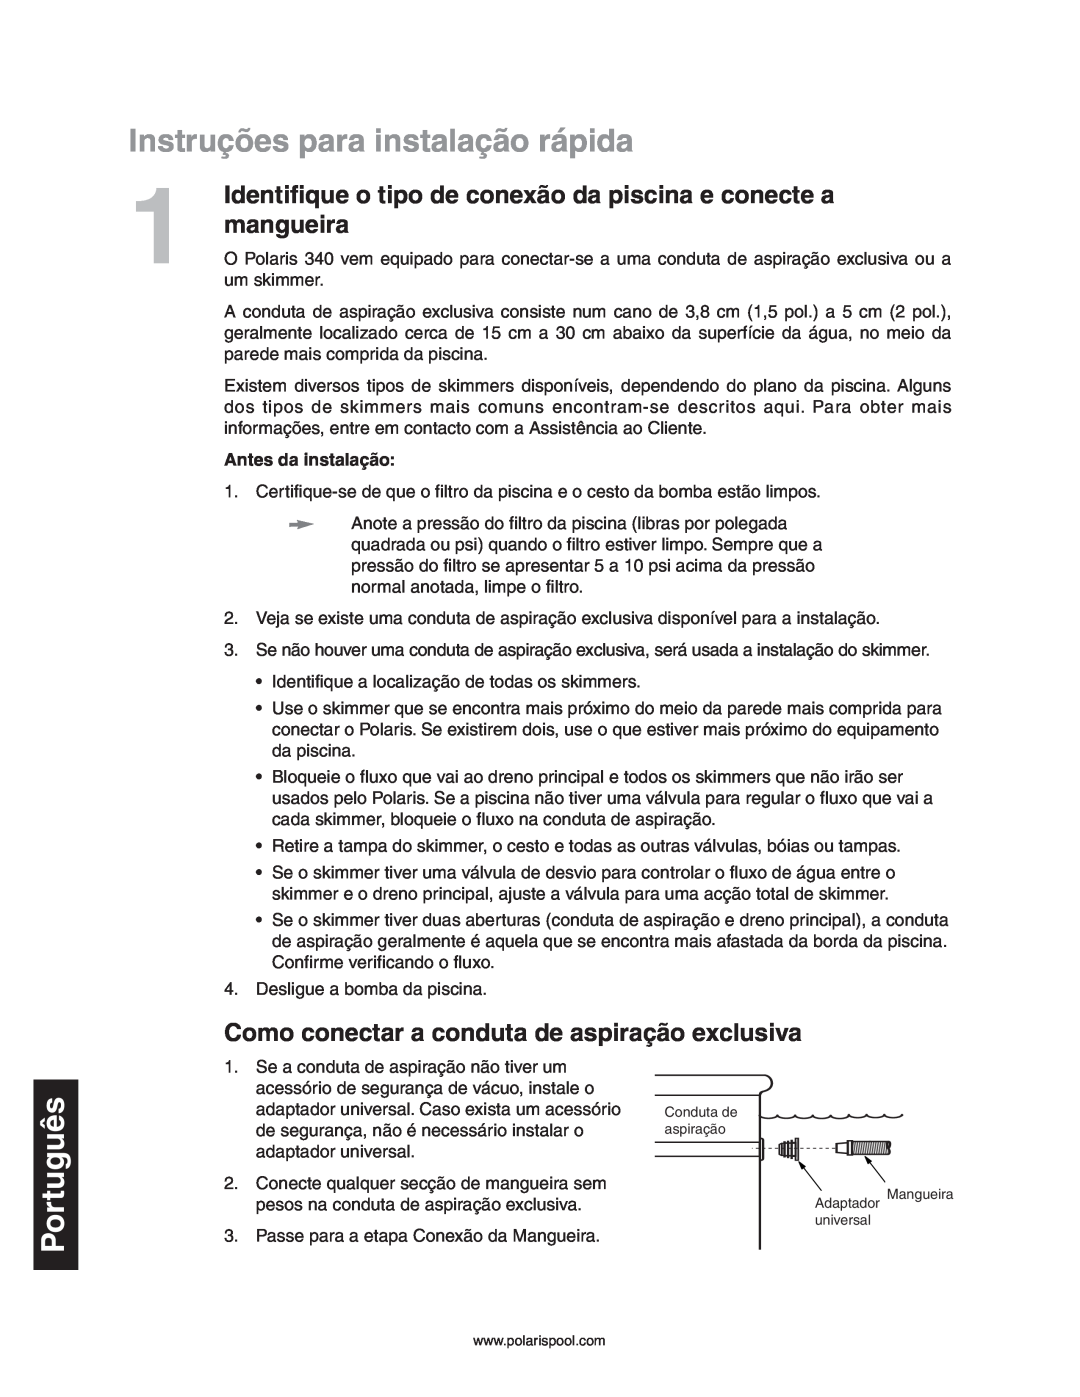 Polaris 340 Instruções para instalação rápida, mangueira, Como conectar a conduta de aspiração exclusiva, Português 